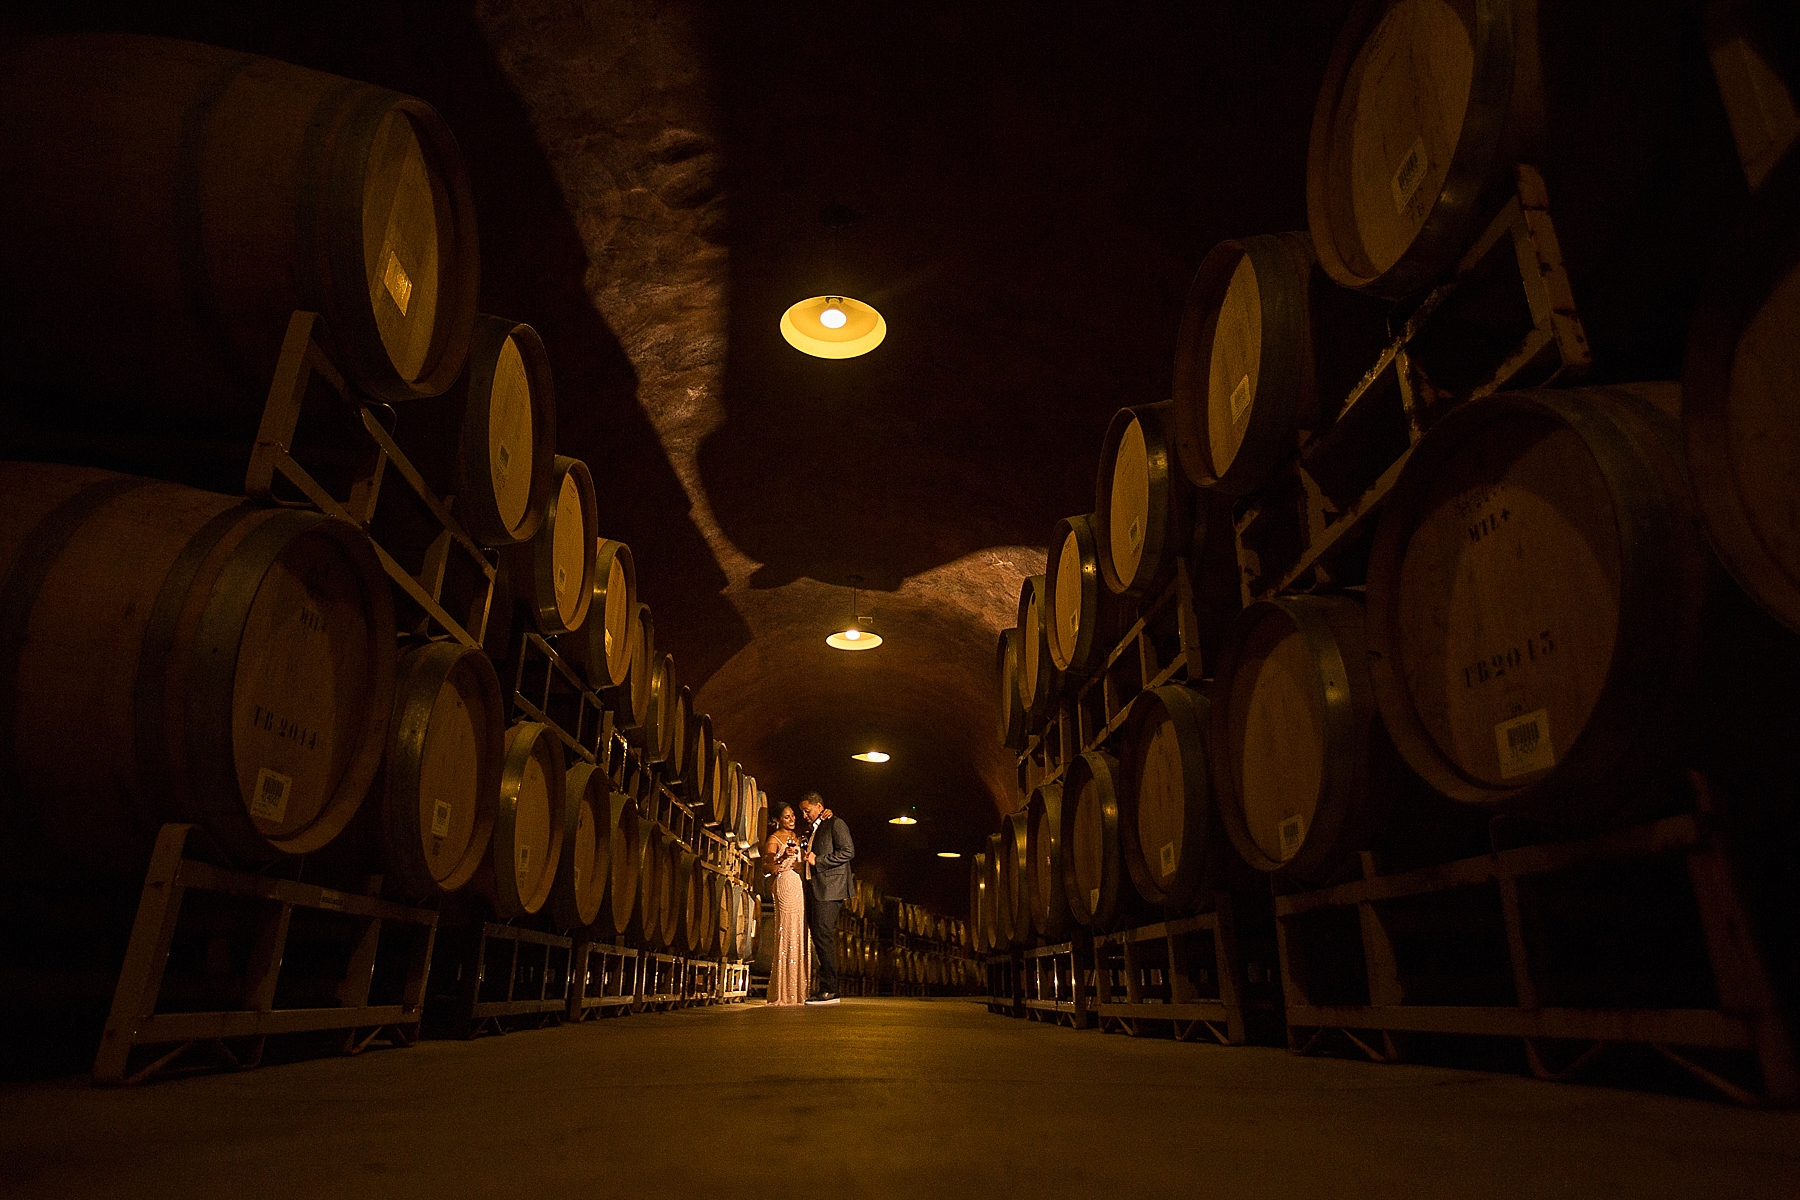 Benziger wine cave wedding